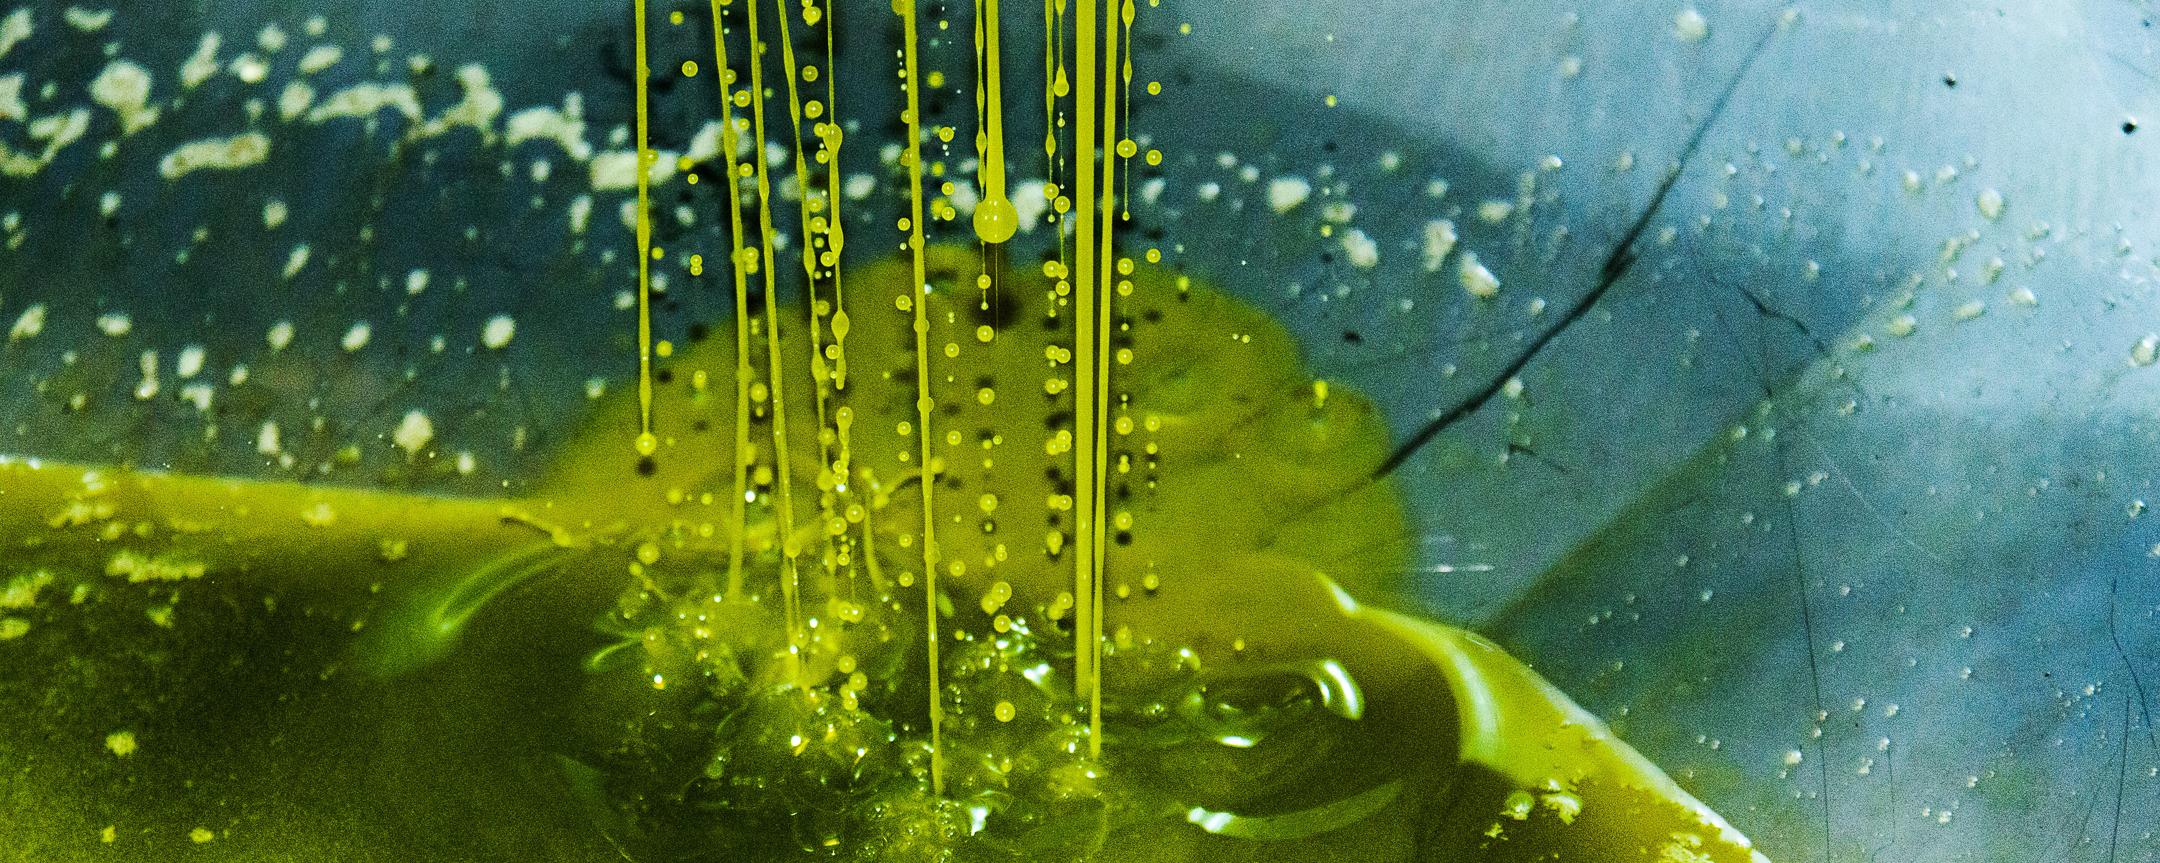 Apulien olivenoel olio costa